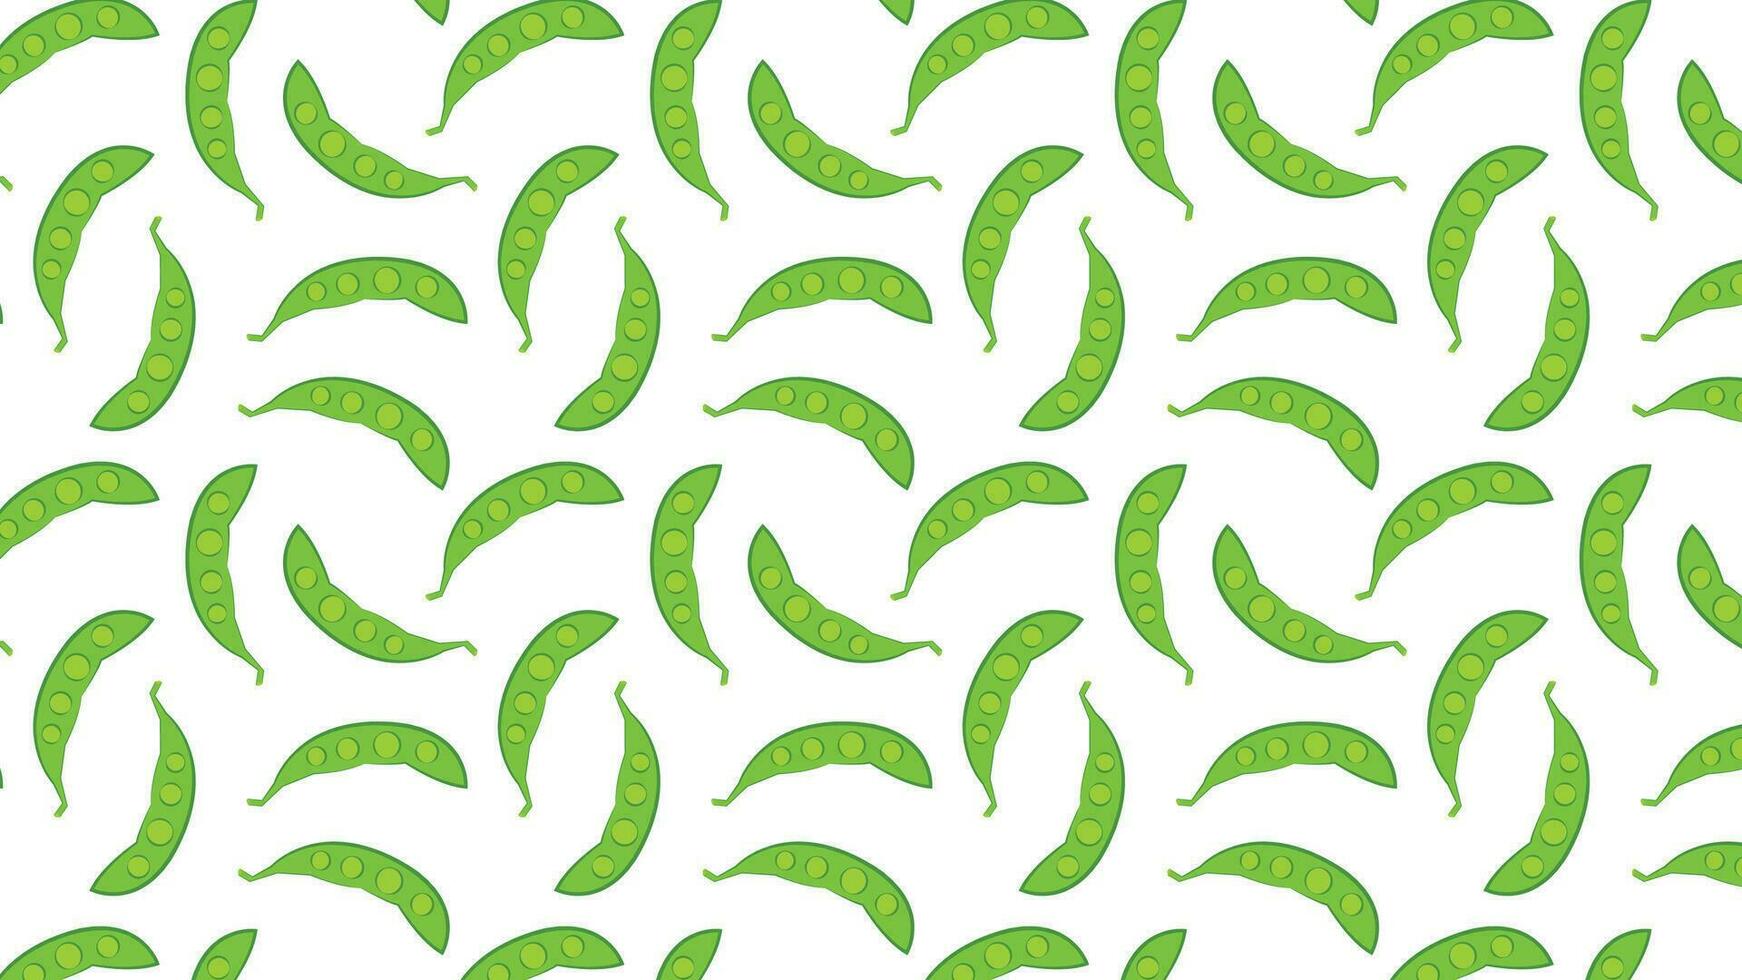 vecteur de pois verts sur fond blanc. vecteur d'icône de pois verts. création de logos.